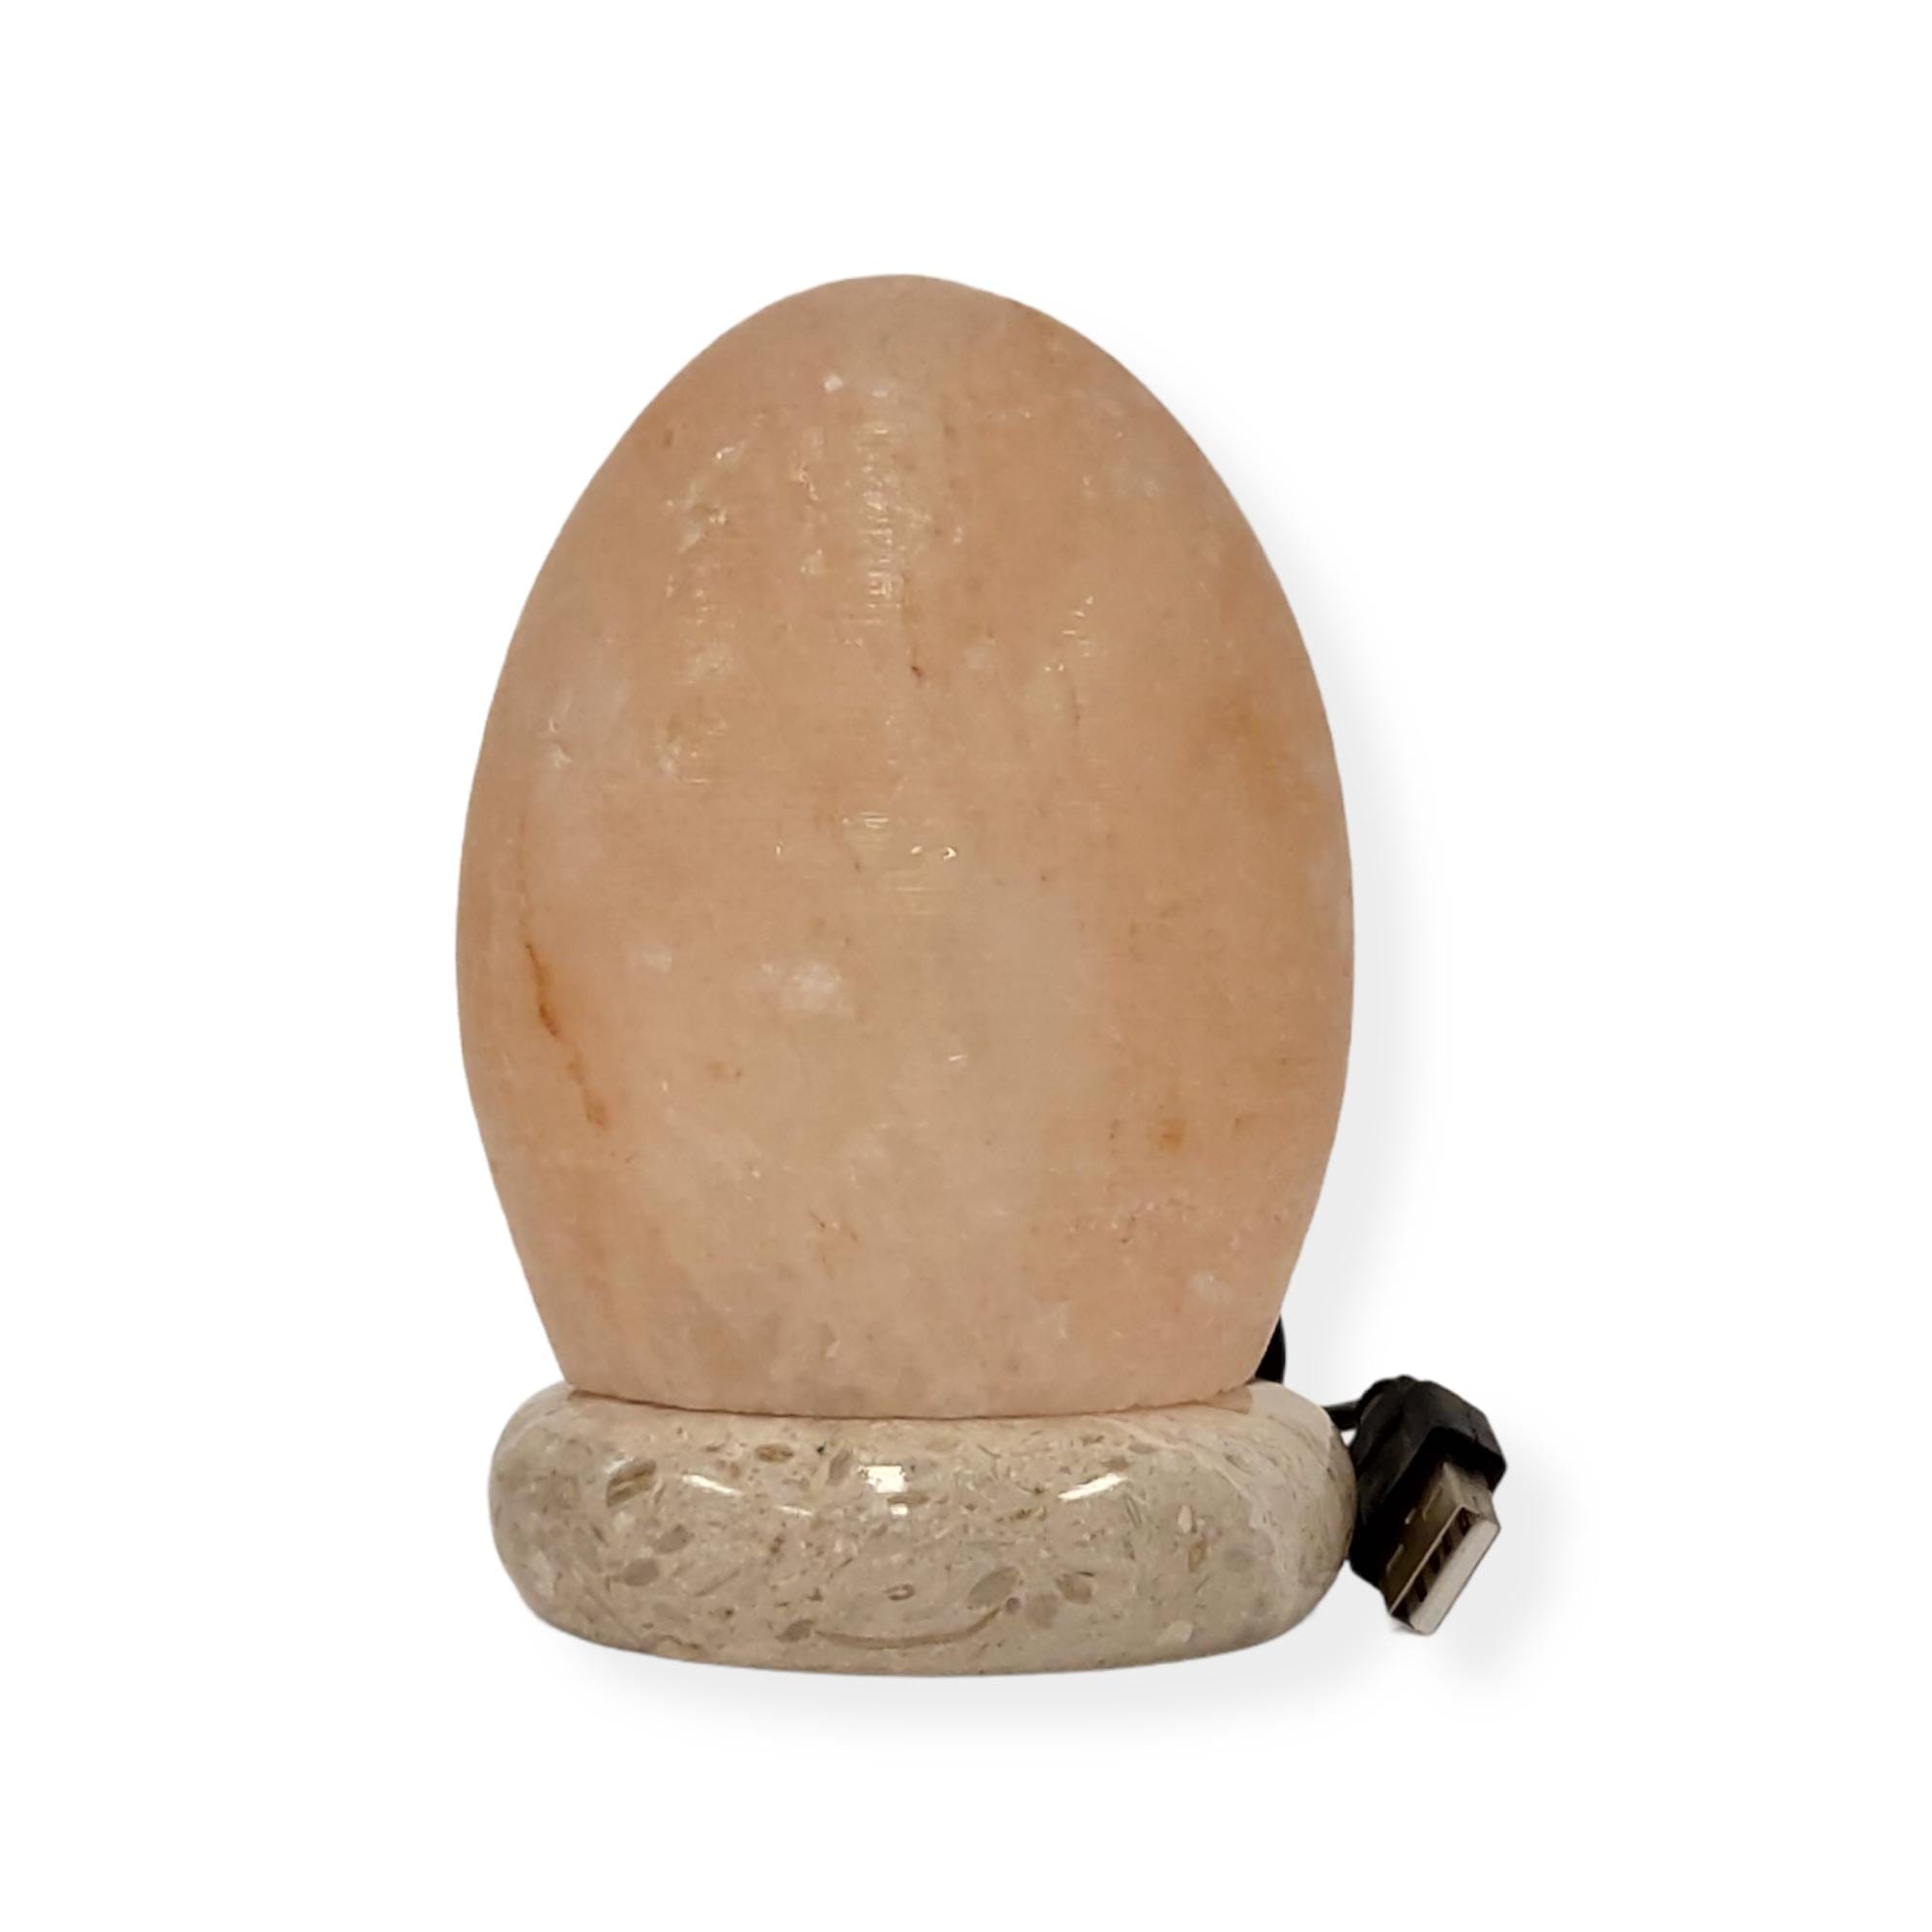 USB Himalayan Salt Lamp - Egg Cone Carved Shape Pink Crystal Rock LED Light